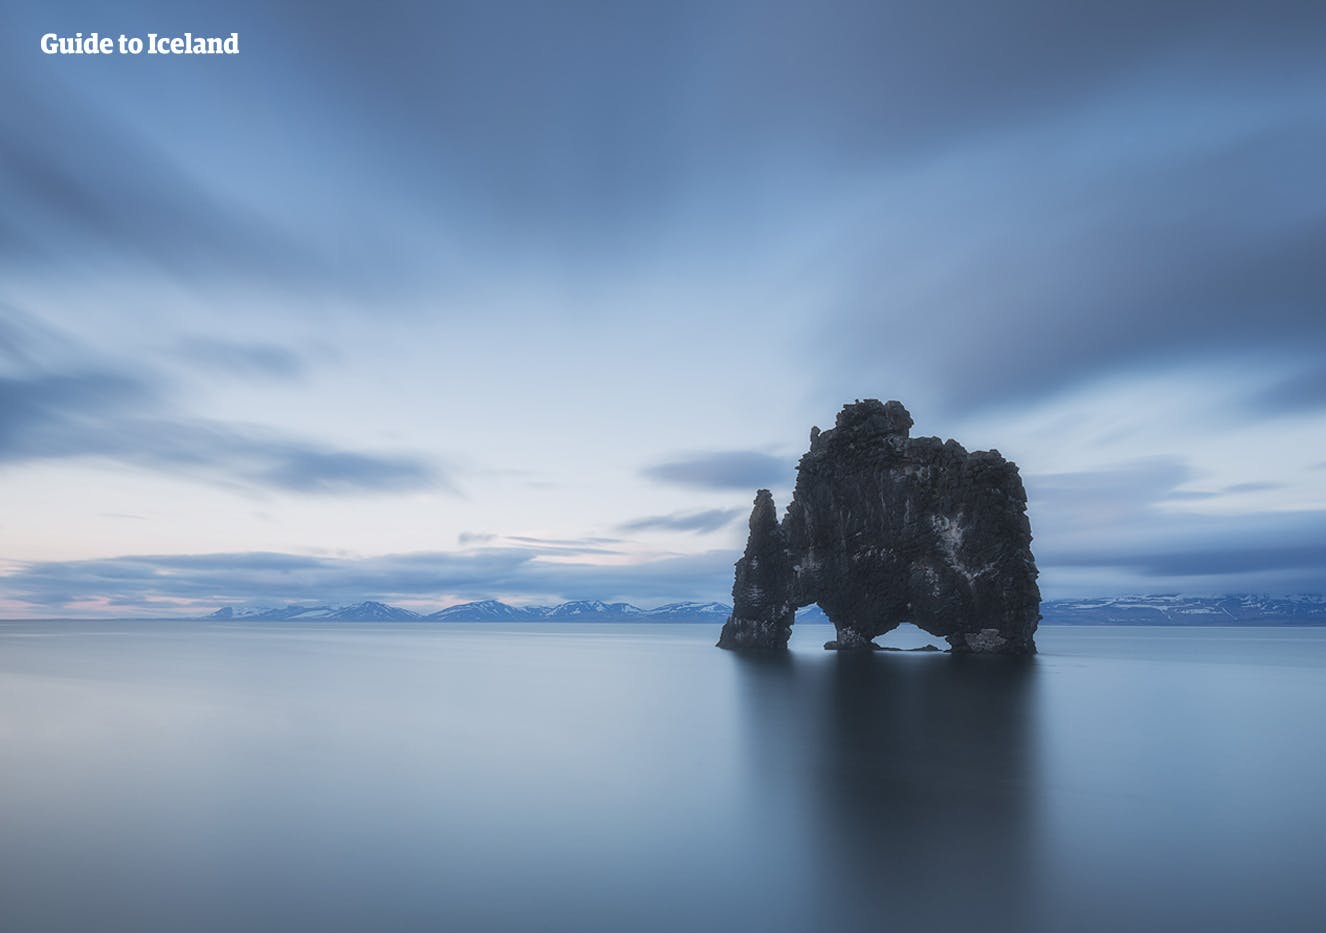 Formacja skalna Hvitserkur, która znajduje się u wybrzeży półwyspu Trolla w północno-zachodniej Islandii.